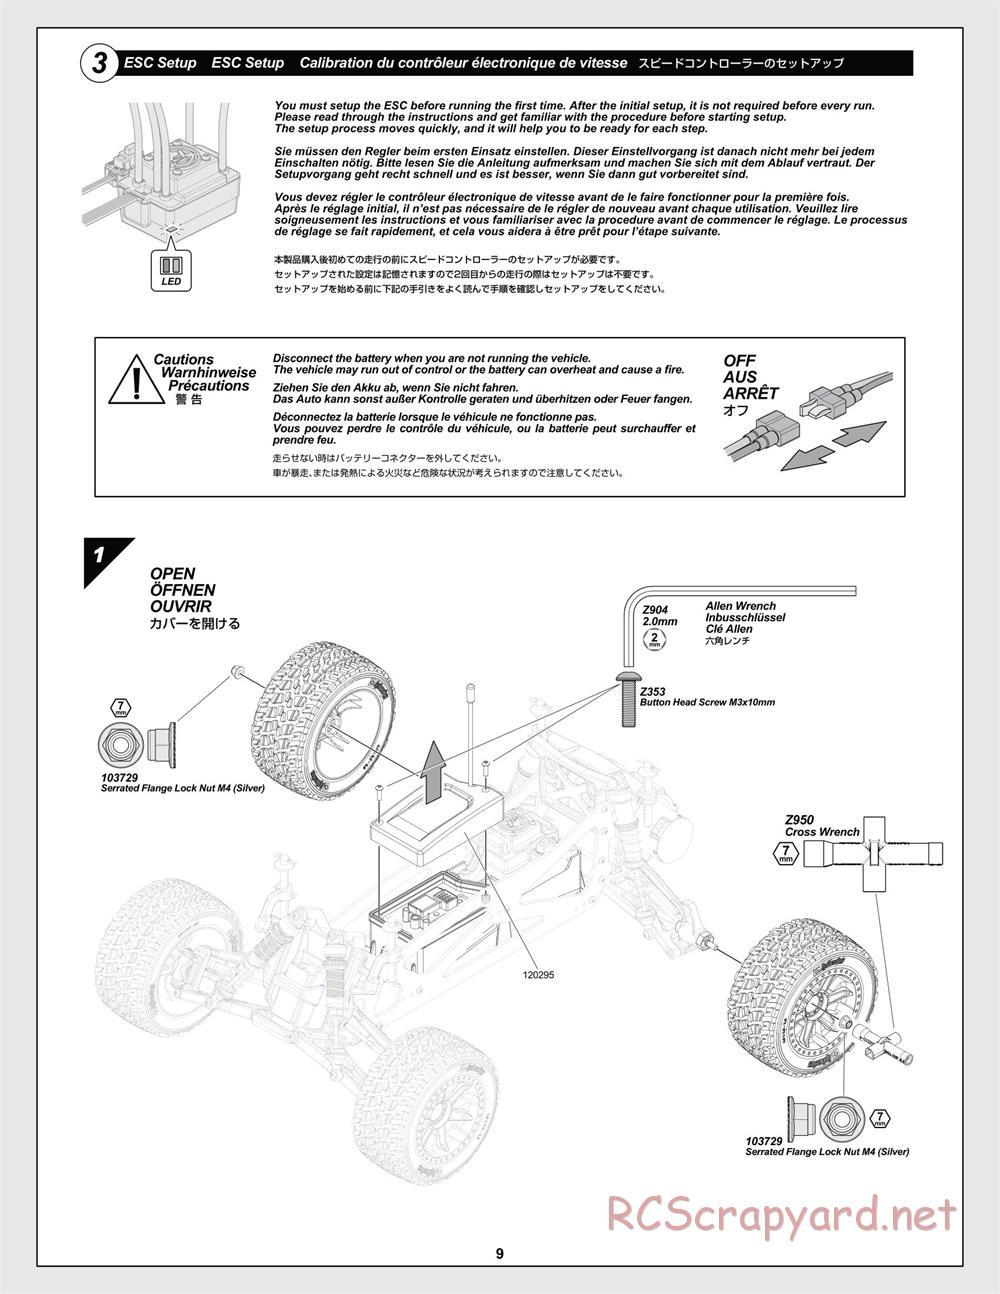 HPI - Jumpshot MT Flux - Manual - Page 9